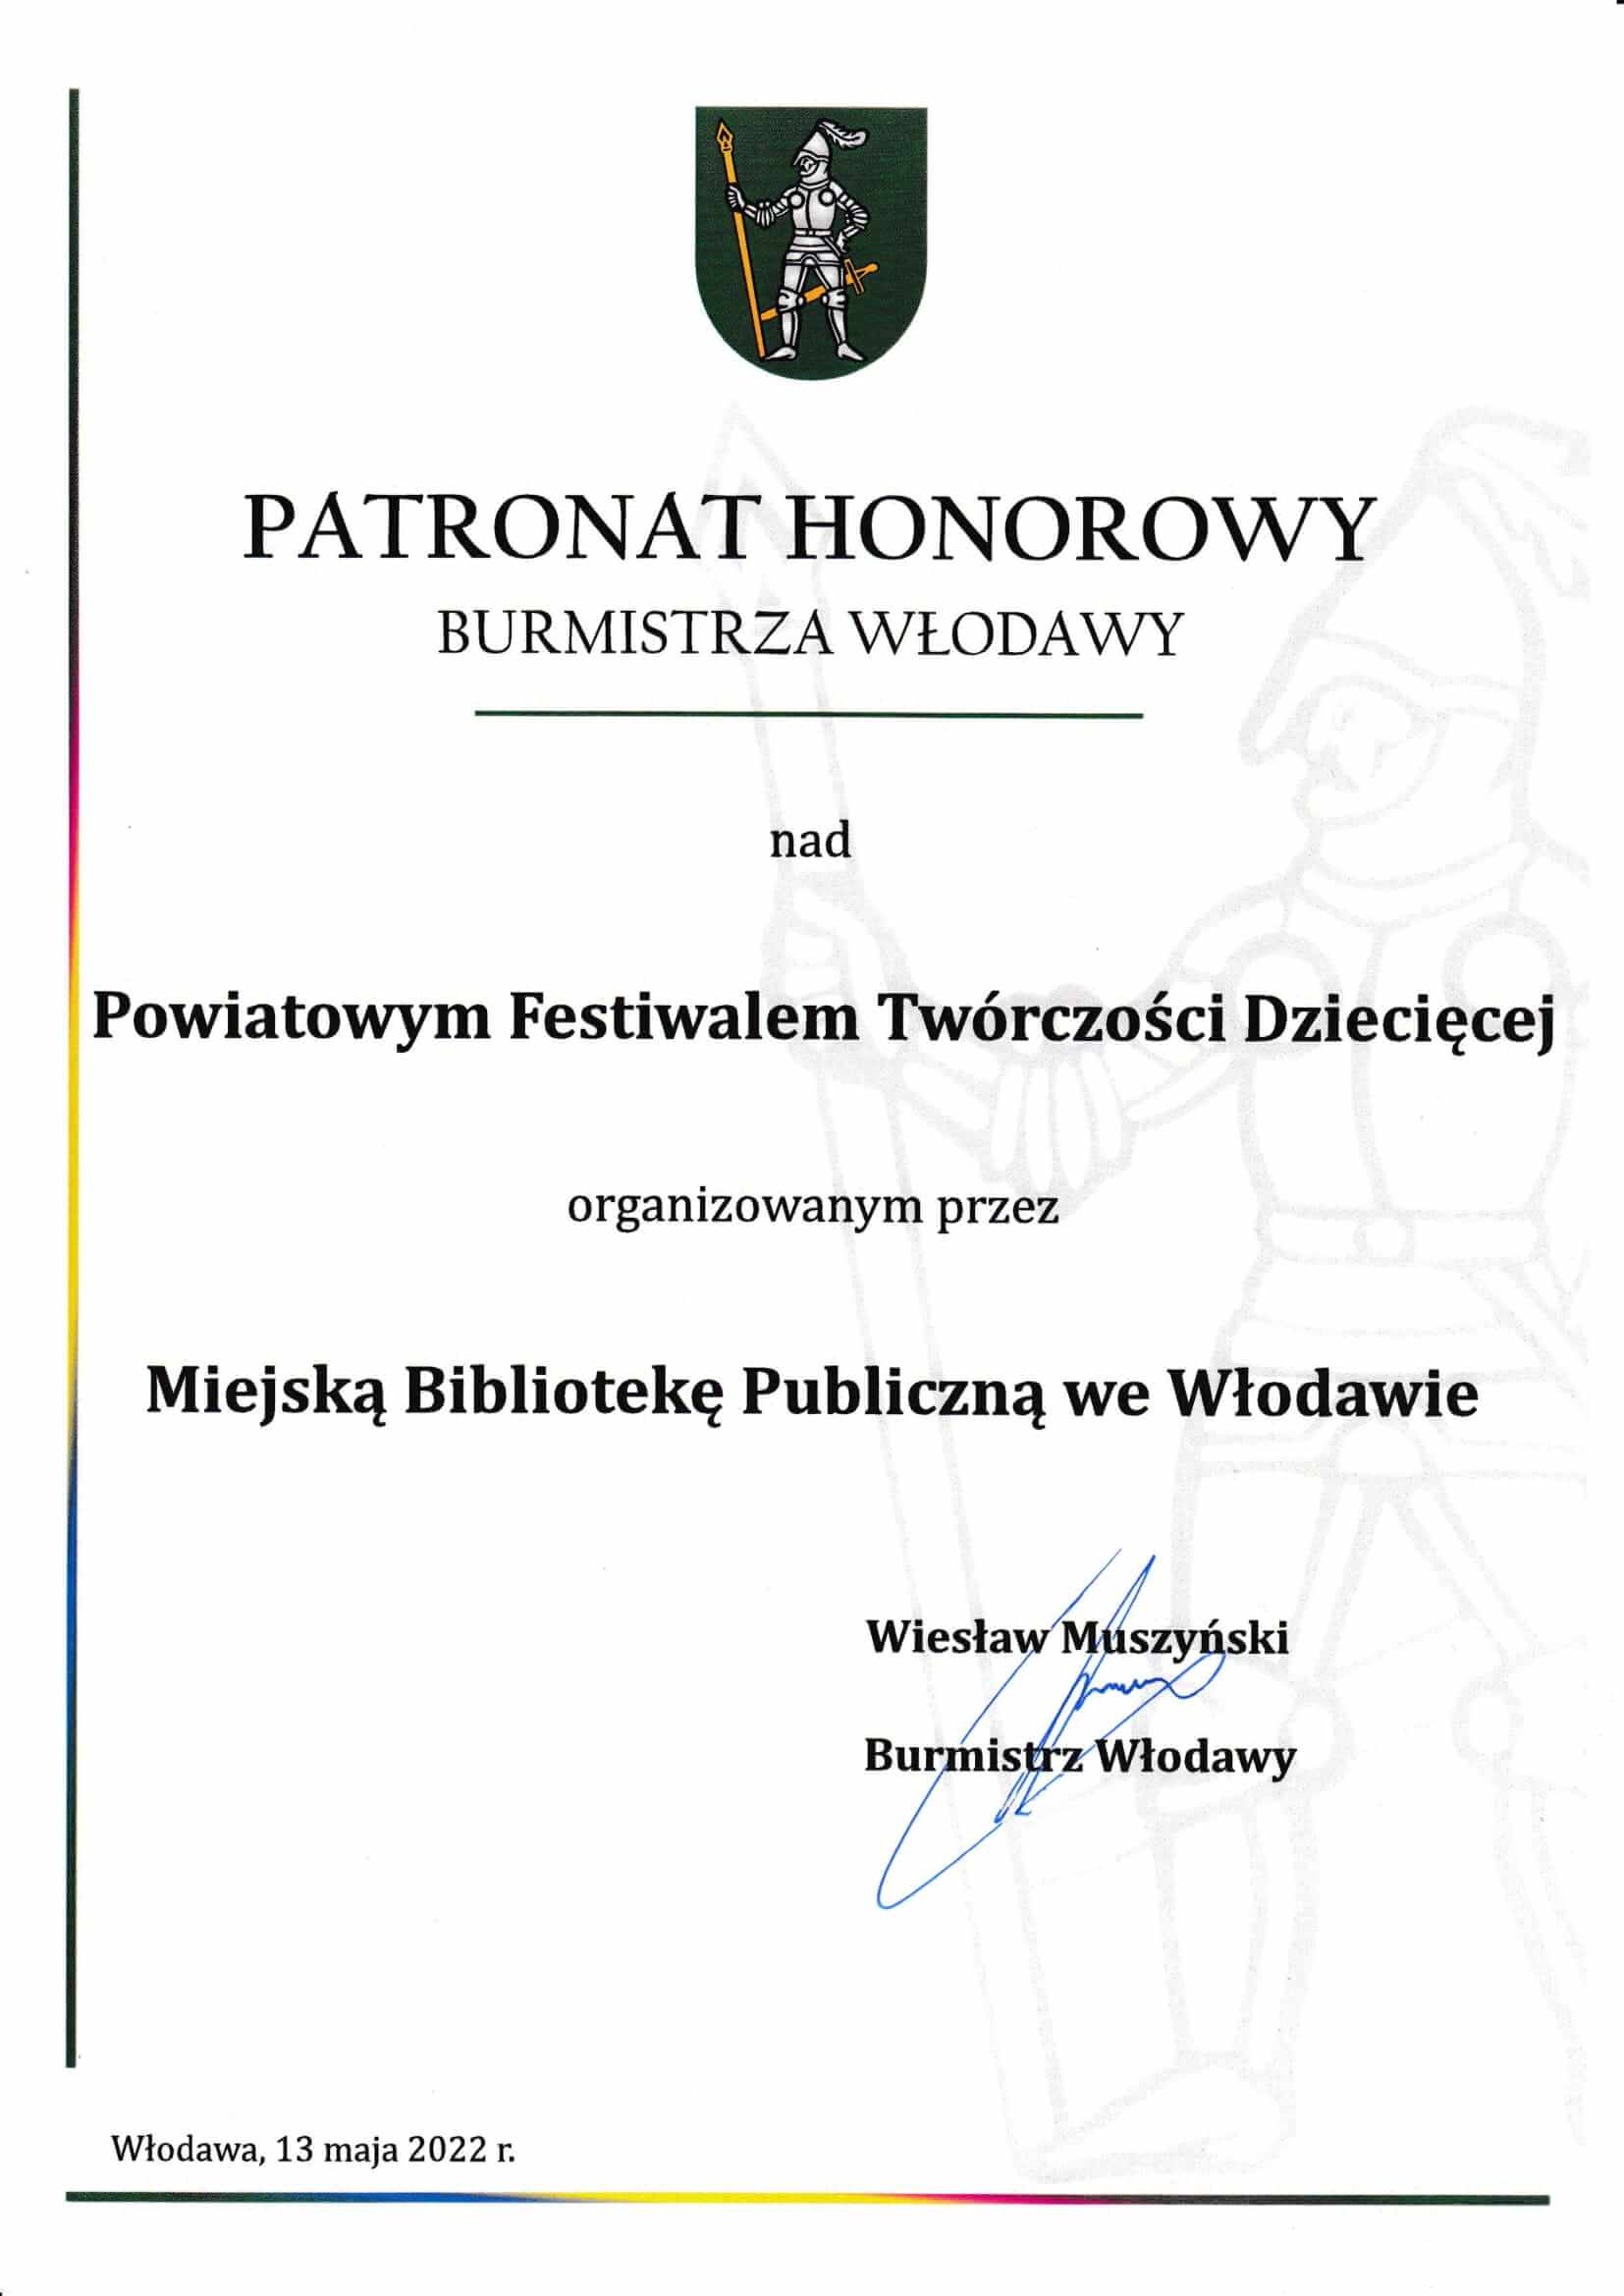 Dokument potwierdzajacy honorowy patronat Burmistrza Włodawy nad wydarzeniem. 